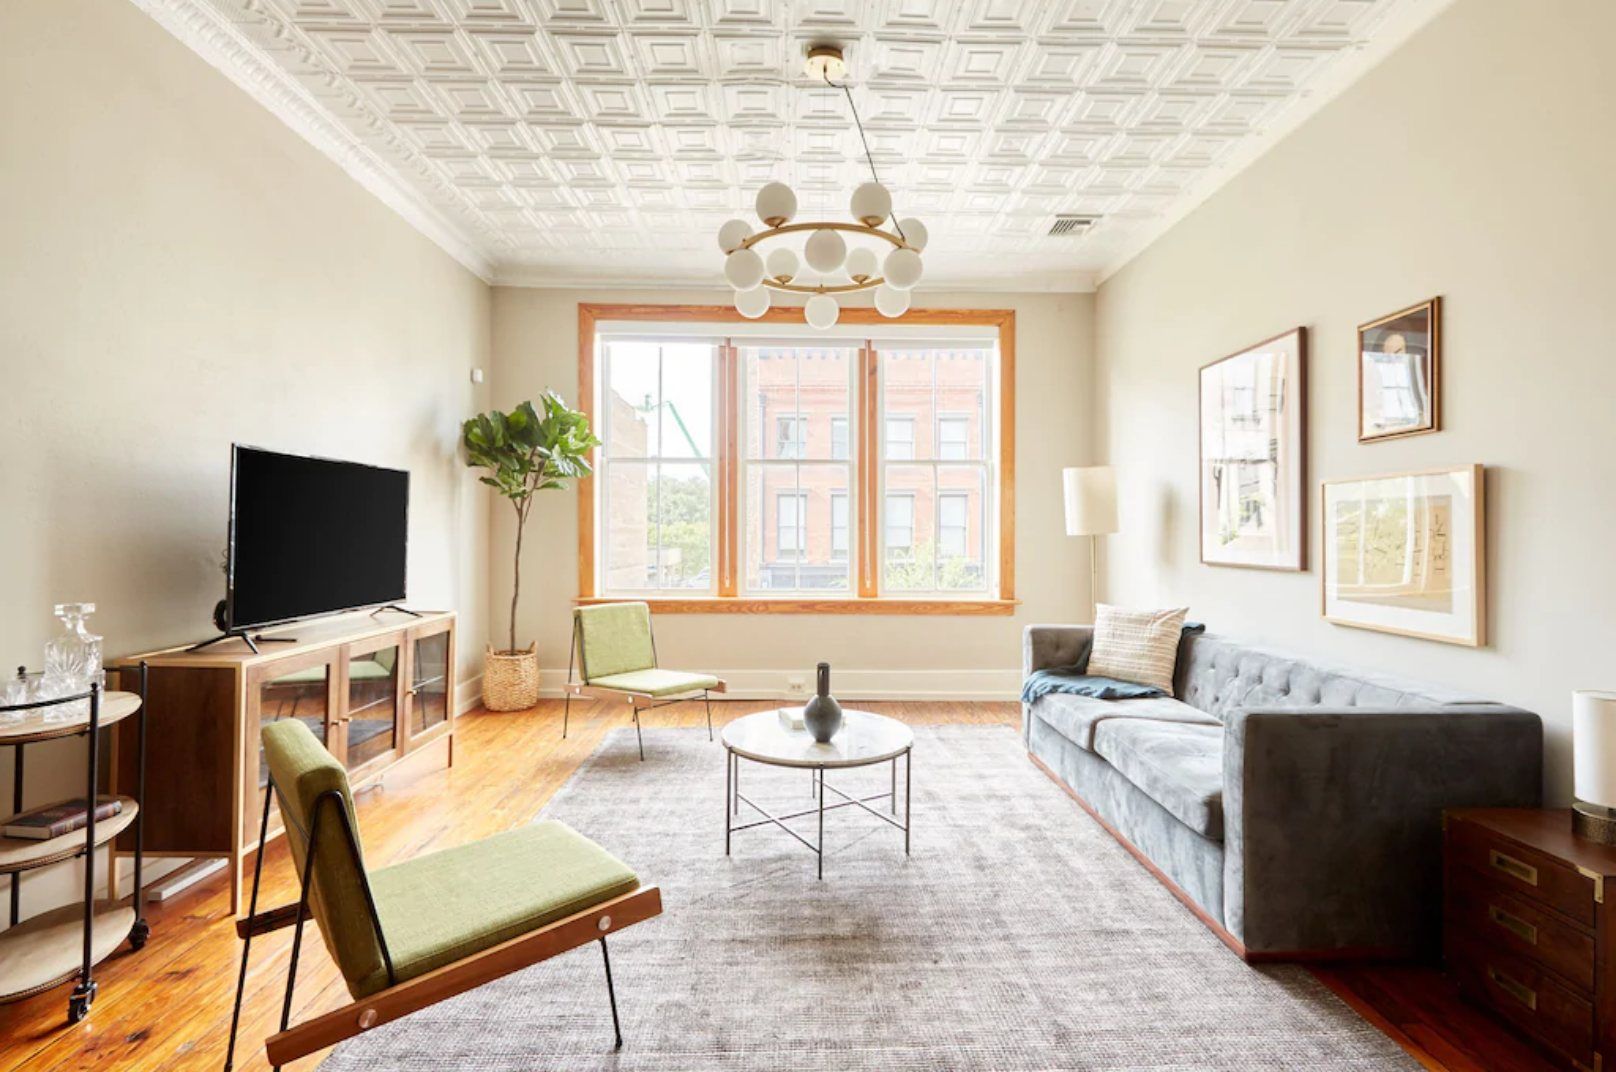 The Best Airbnbs in Savannah, GA